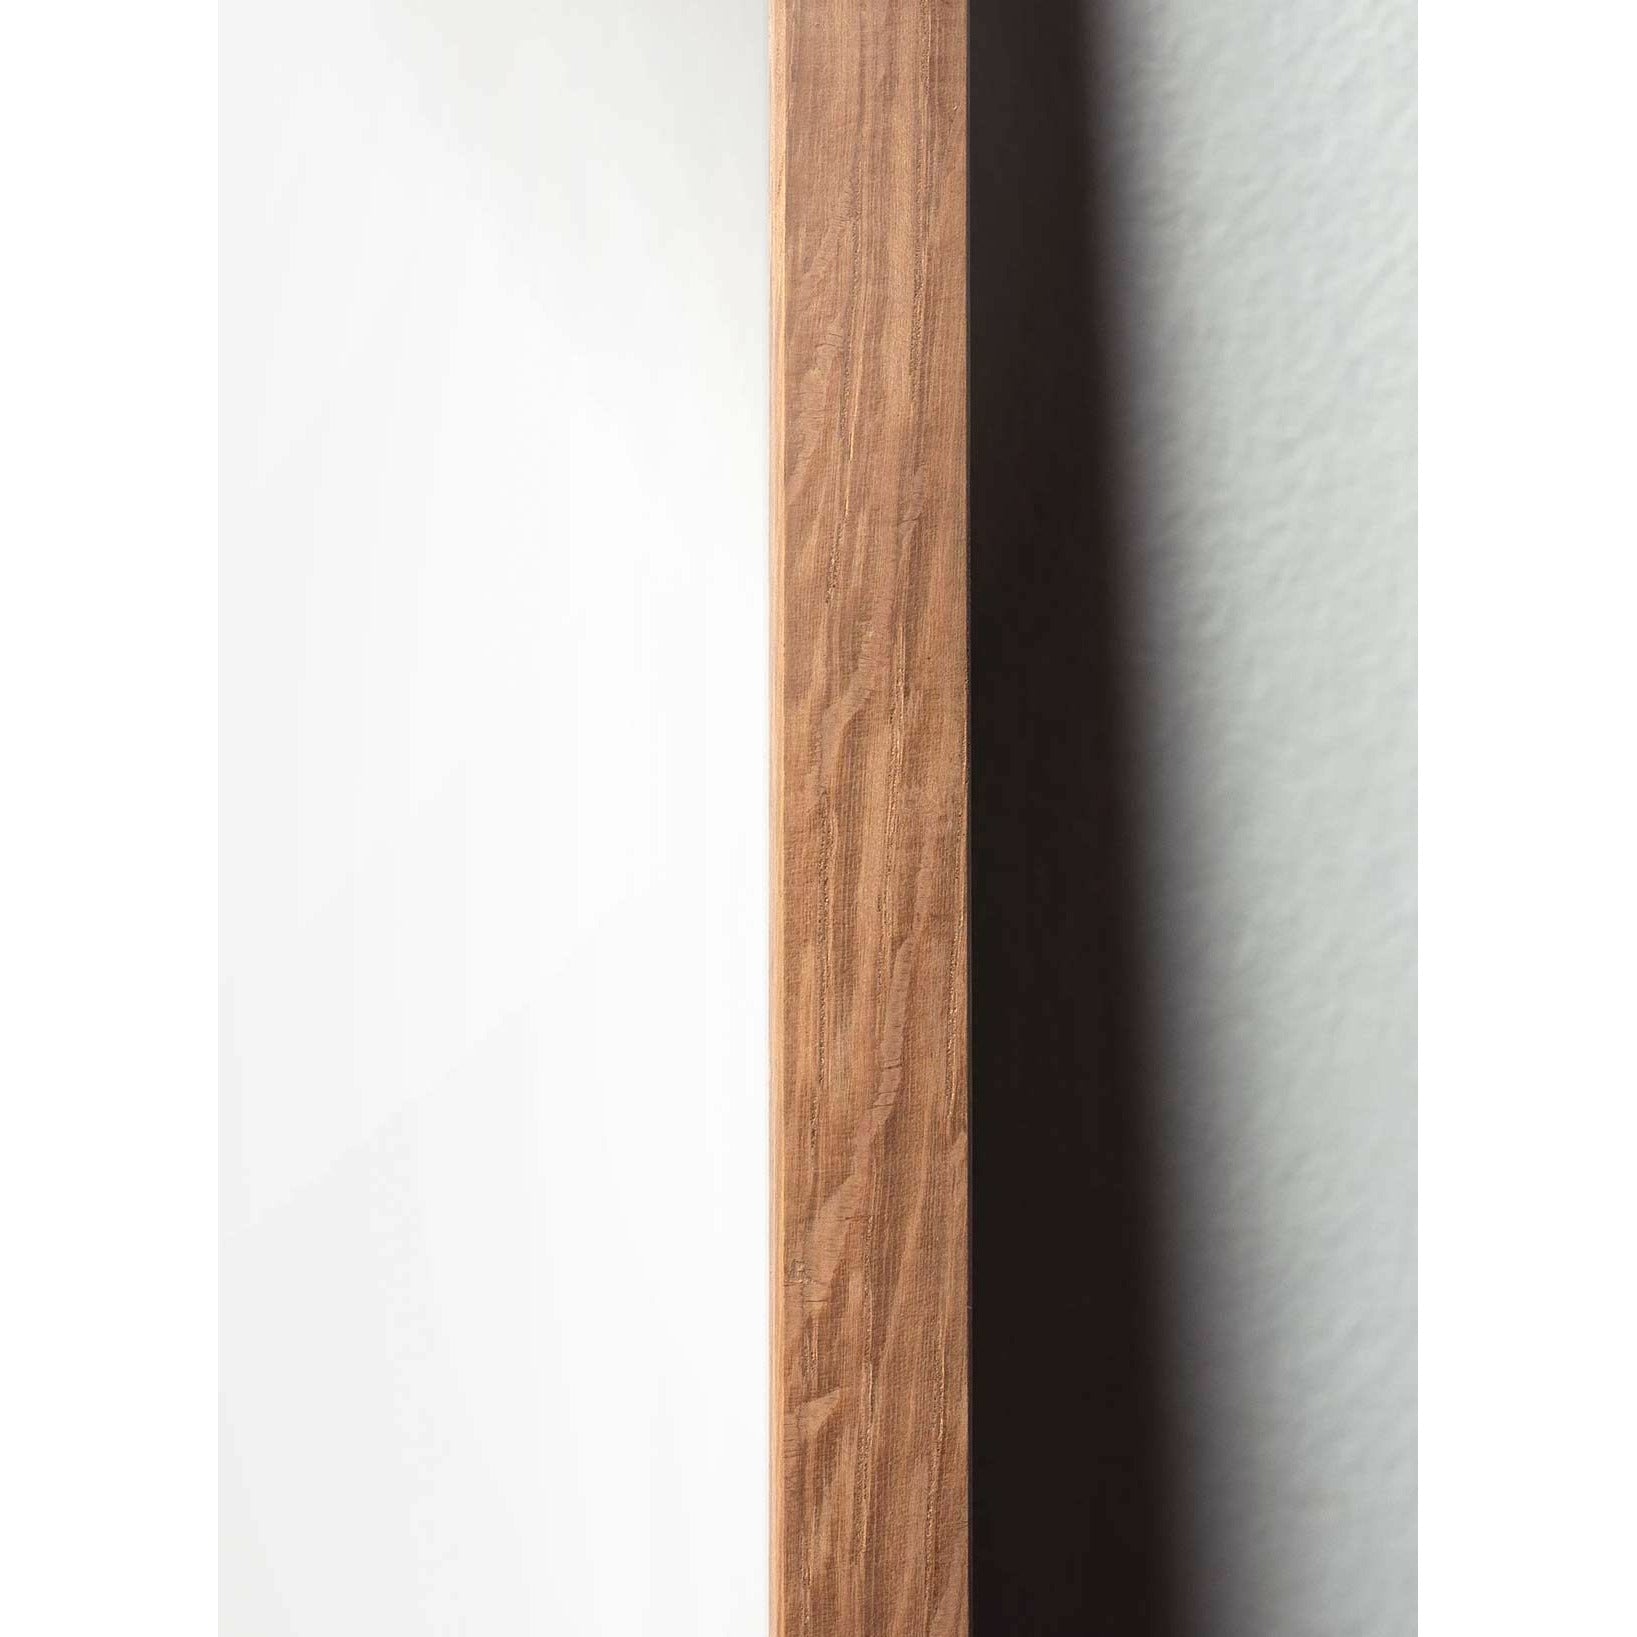 brainchild Affiche classique du cône en pin, cadre en bois clair 30x40 cm, fond de couleur sable